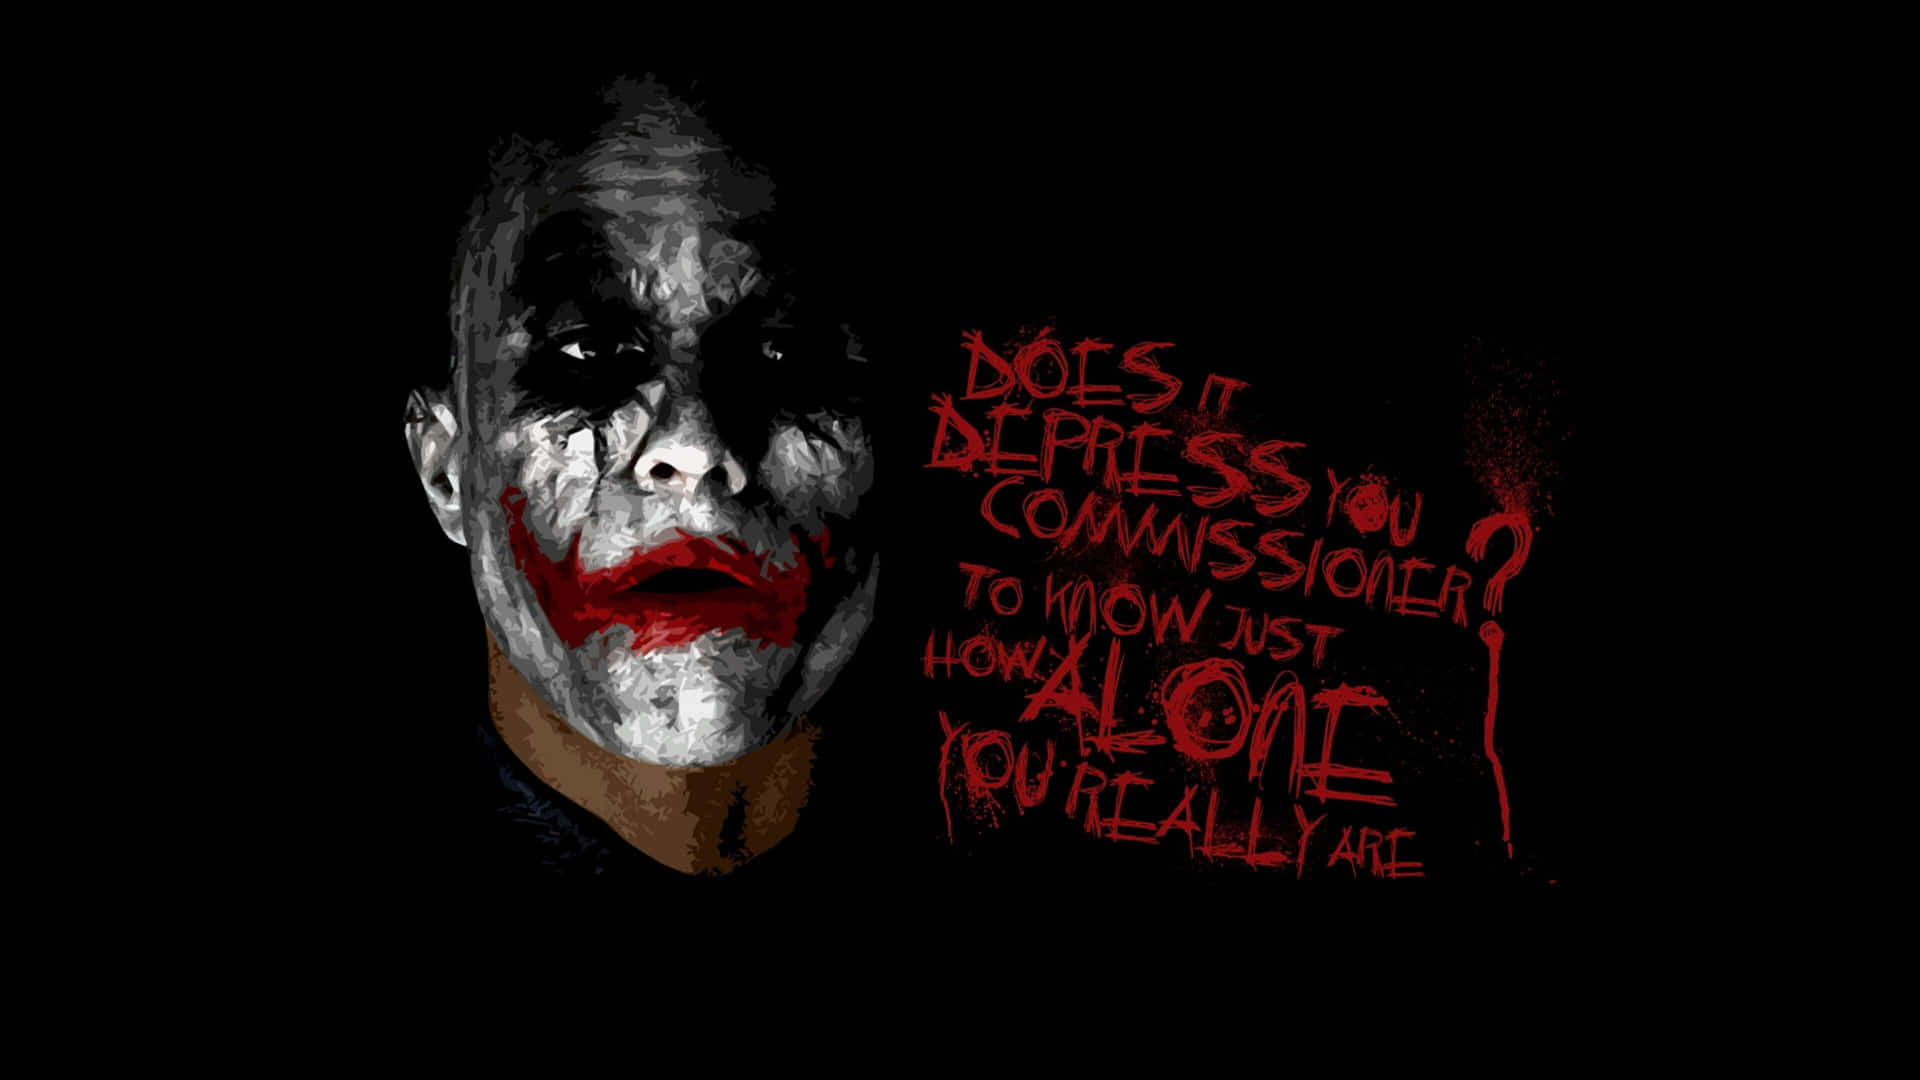 Heath Ledger as the Joker in The Dark Knight, in 4K Ultra HD Wallpaper